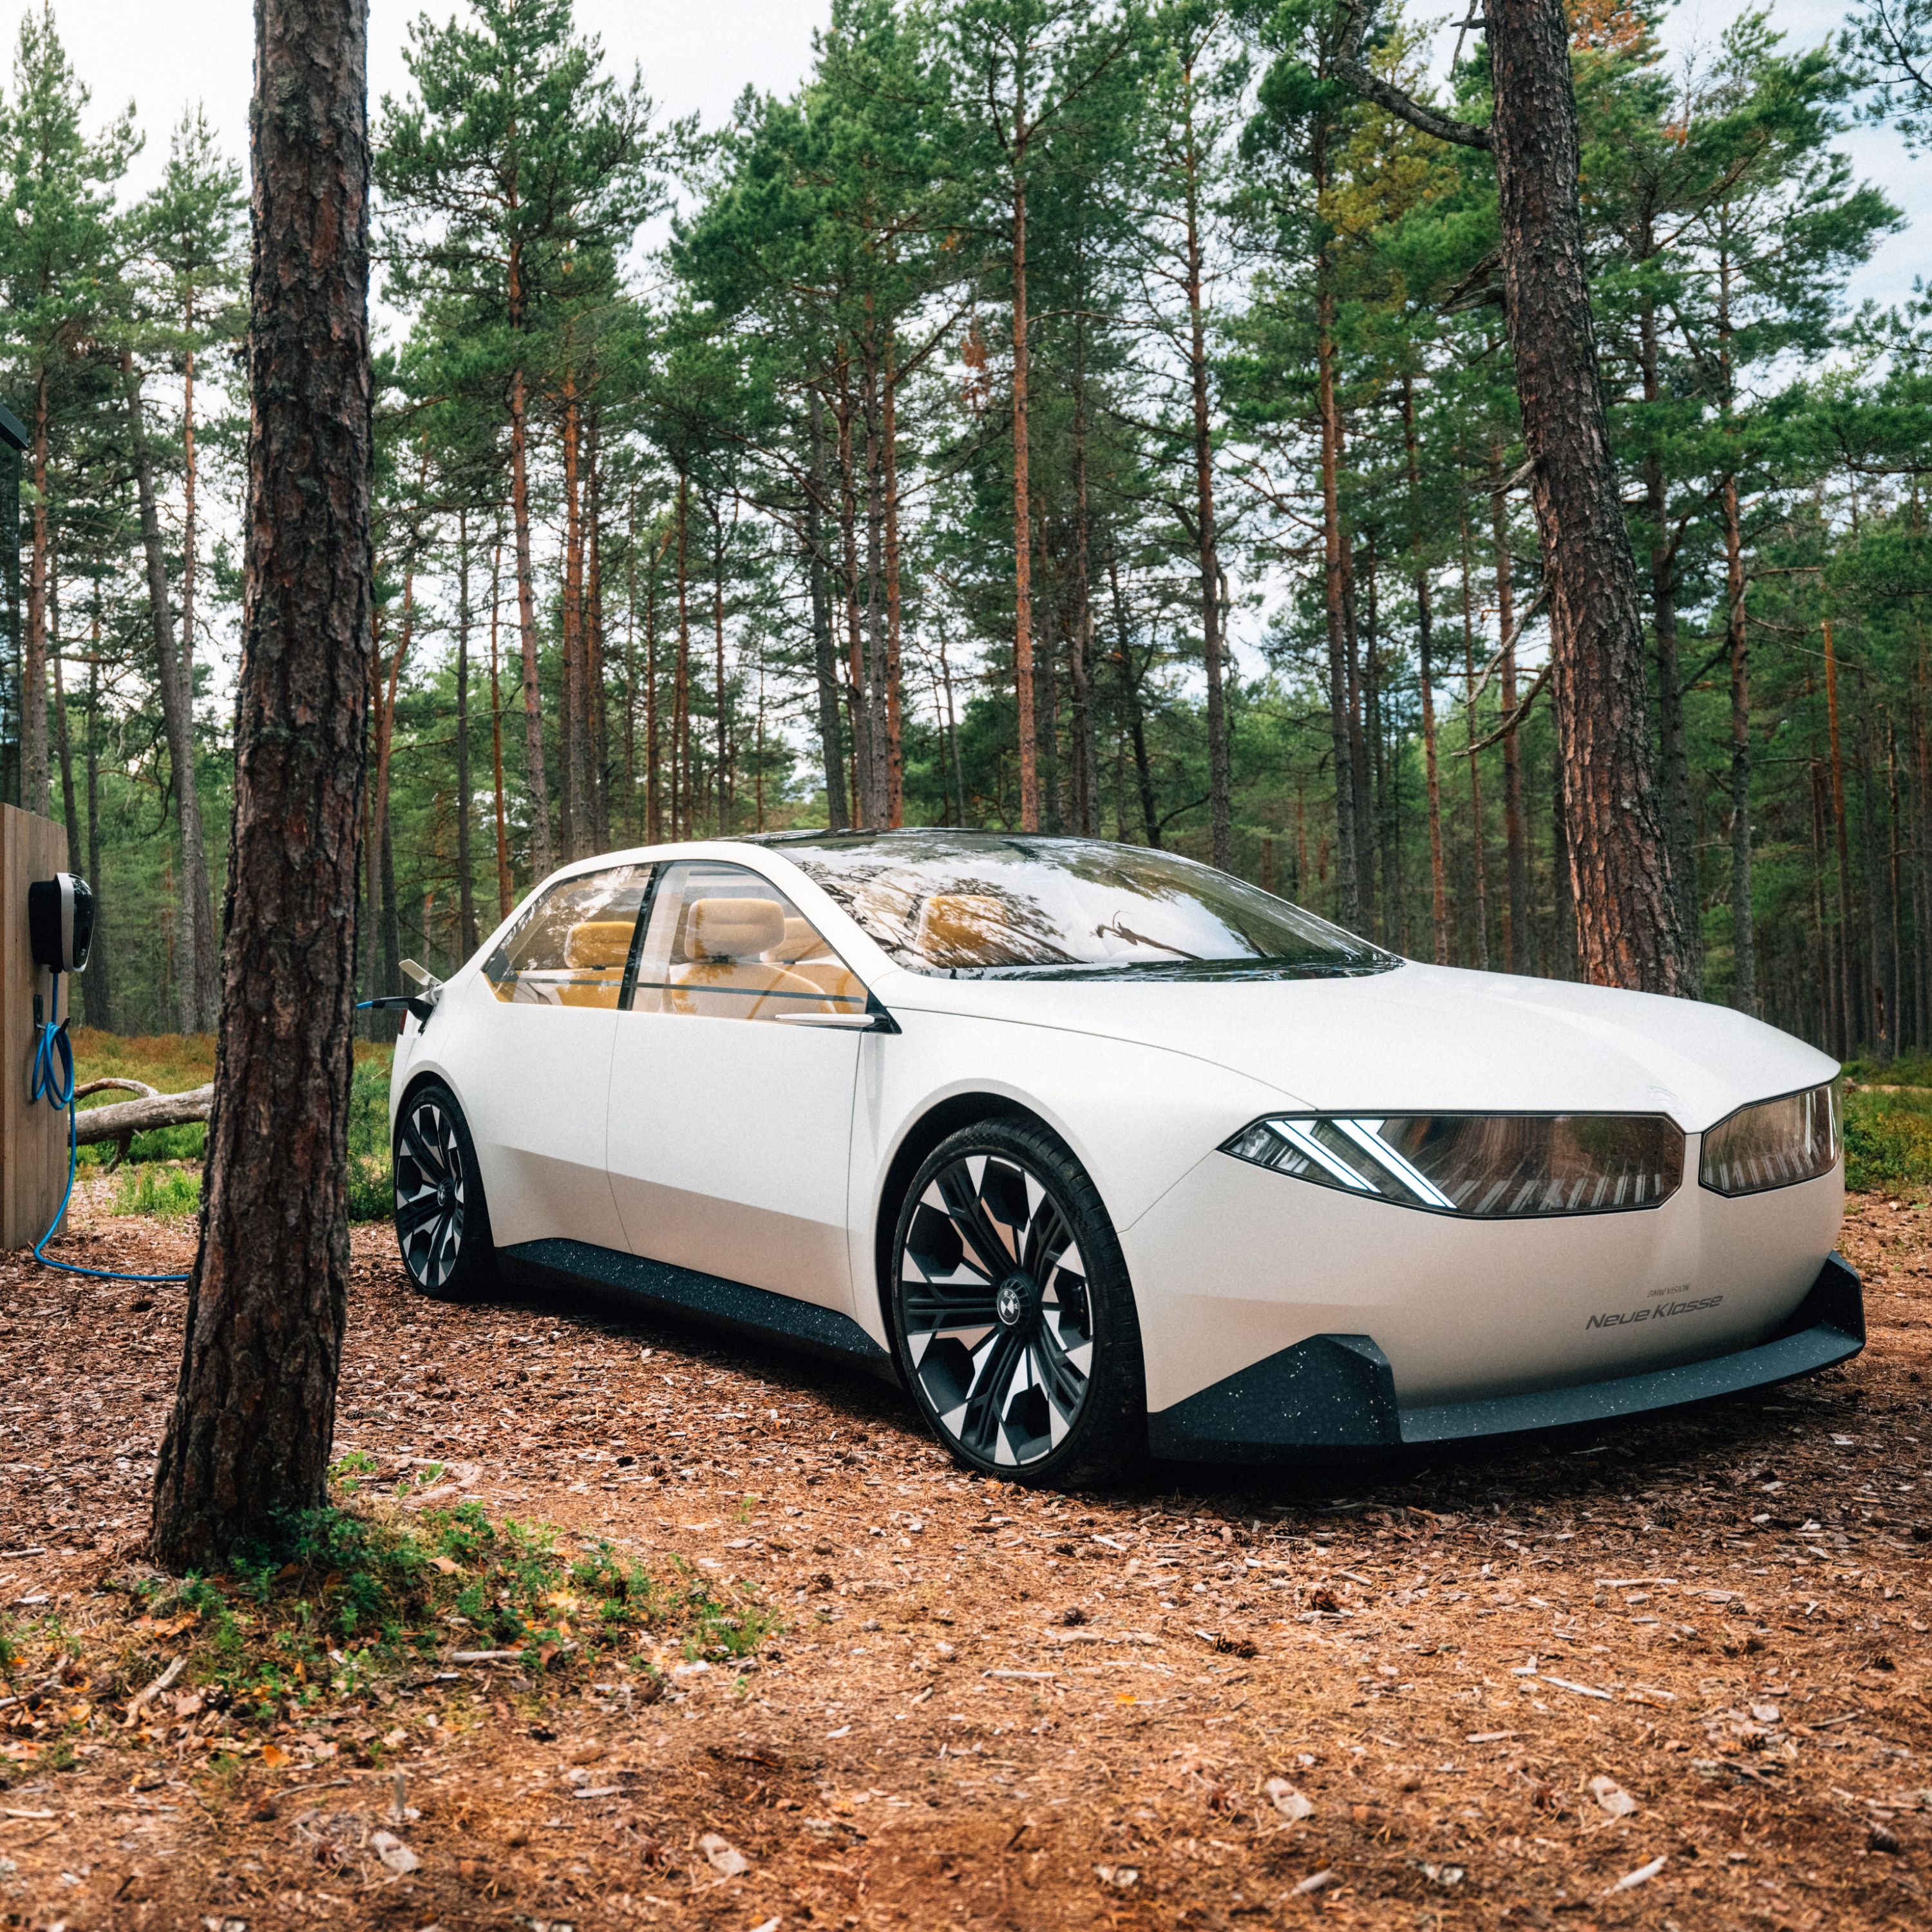 BMW Vision new class concept de véhicule 2023 Extérieur 2/3 vue de côté, roulant dans la forêt